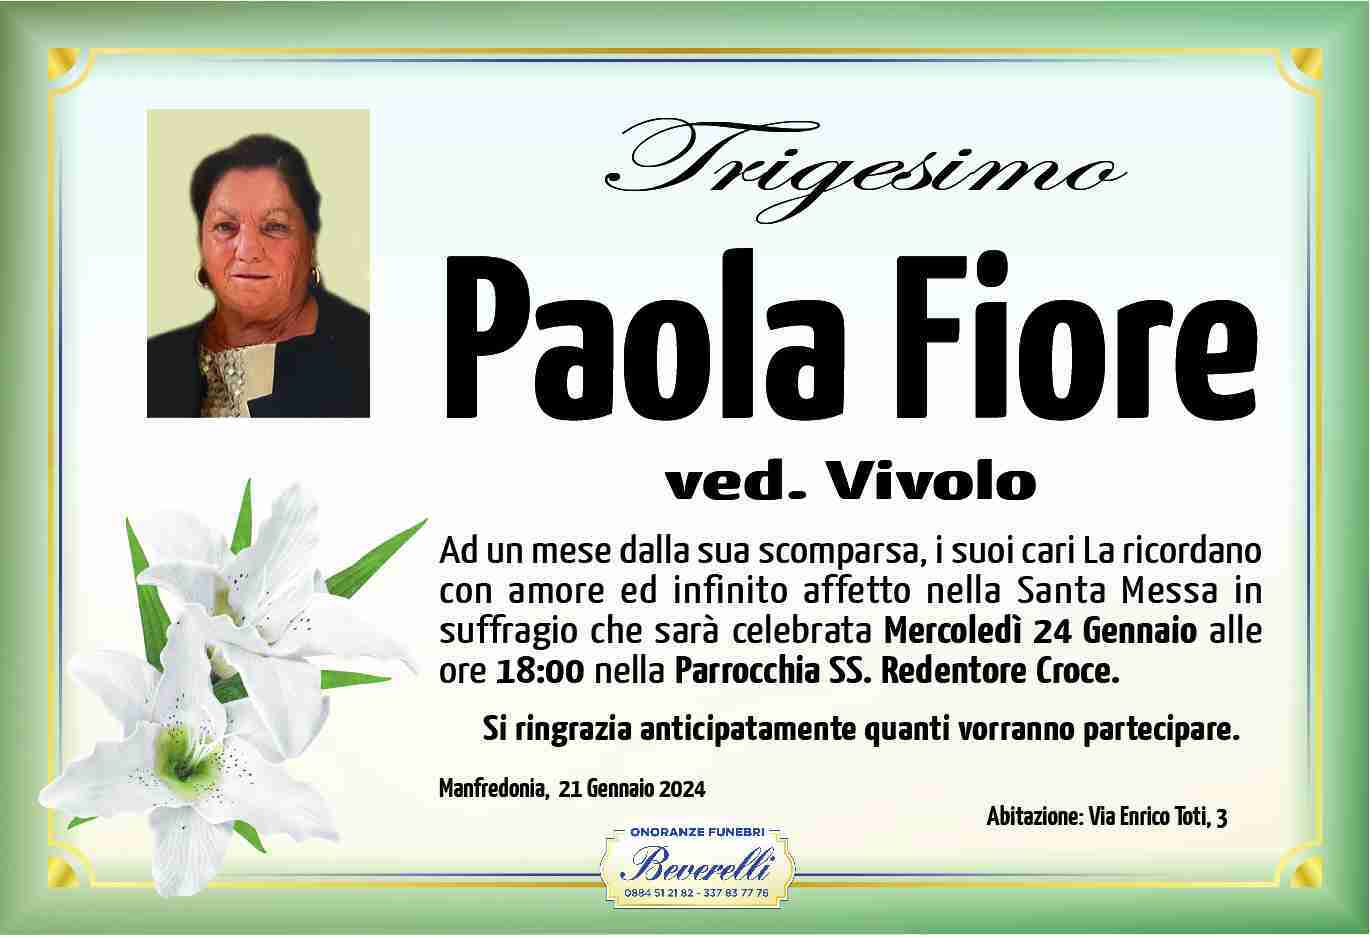 Paola Fiore